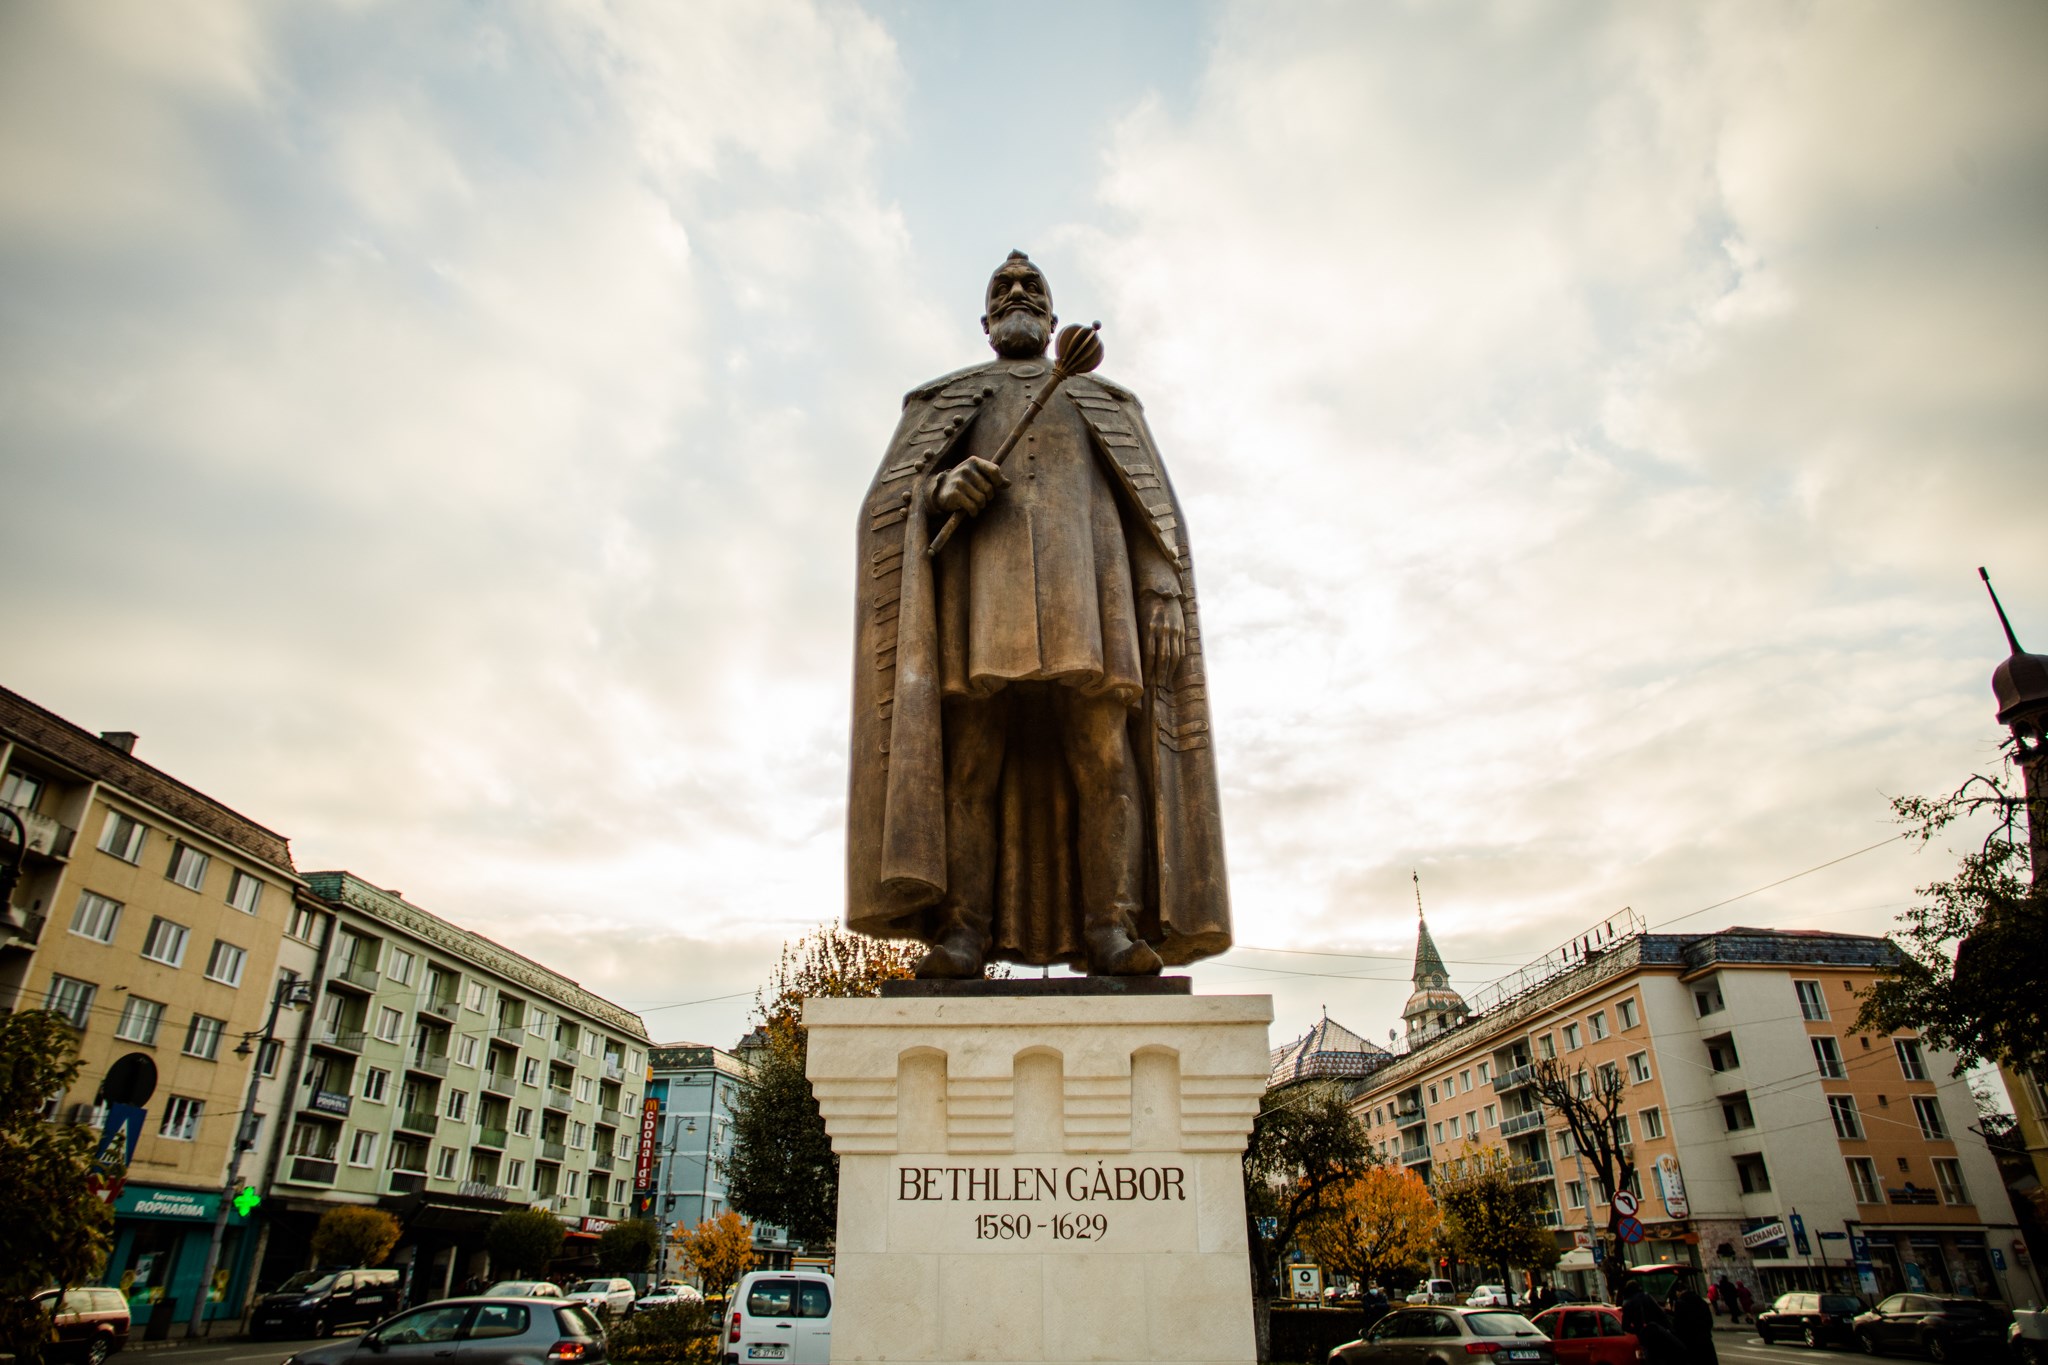 特蘭西瓦尼亞貝斯倫王子的雕像在 Marosvásárhely Targu Mures 落成